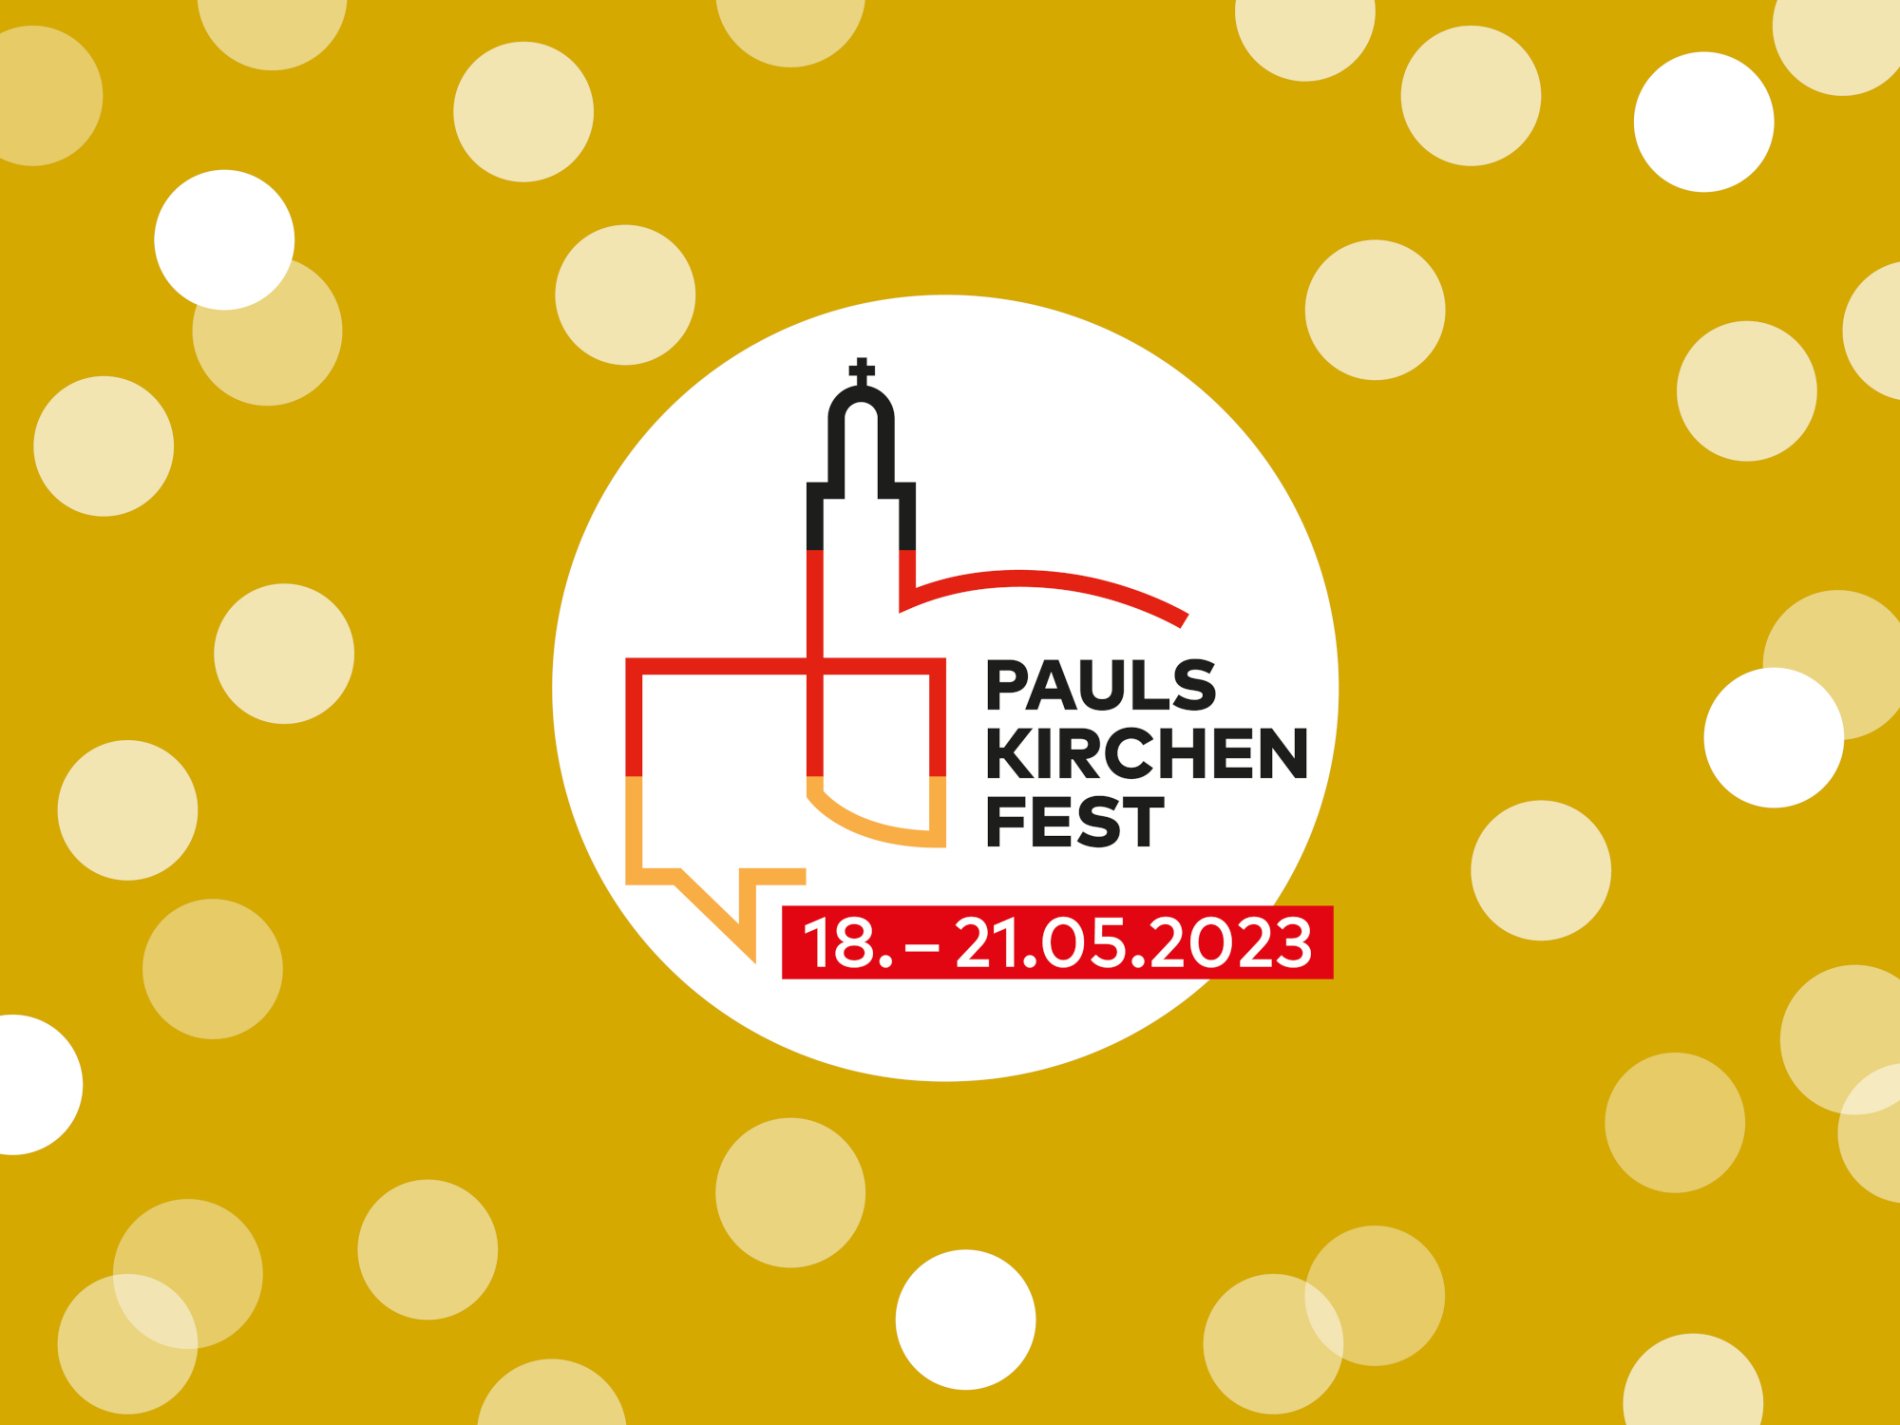 Paulskirchenfest Frankfurt 18.05. - 21.05.2023